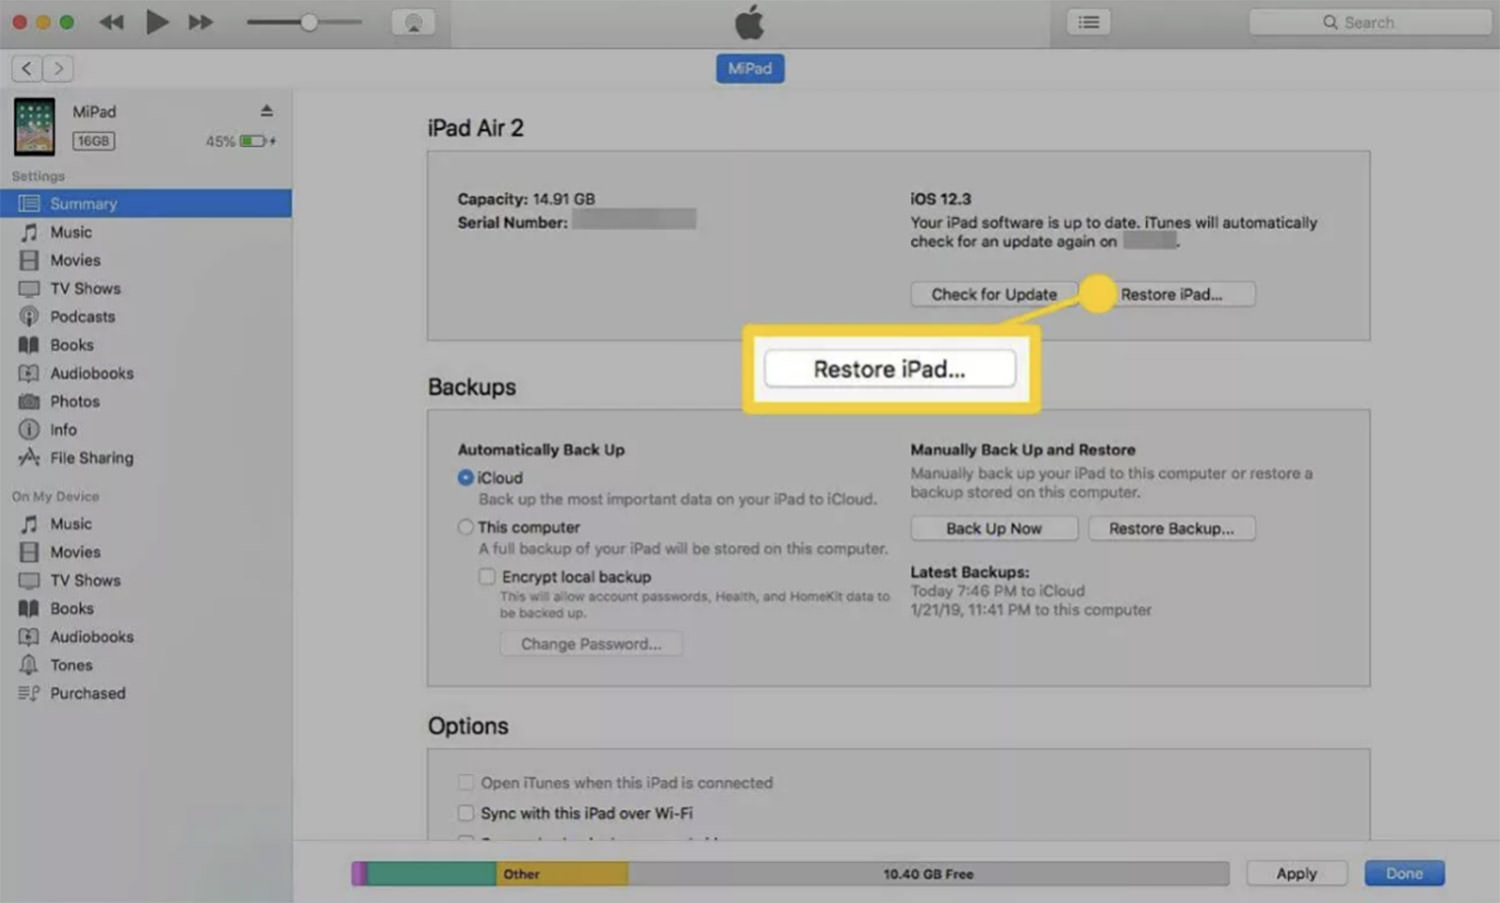 Instructions for restoring iPad via iTunes